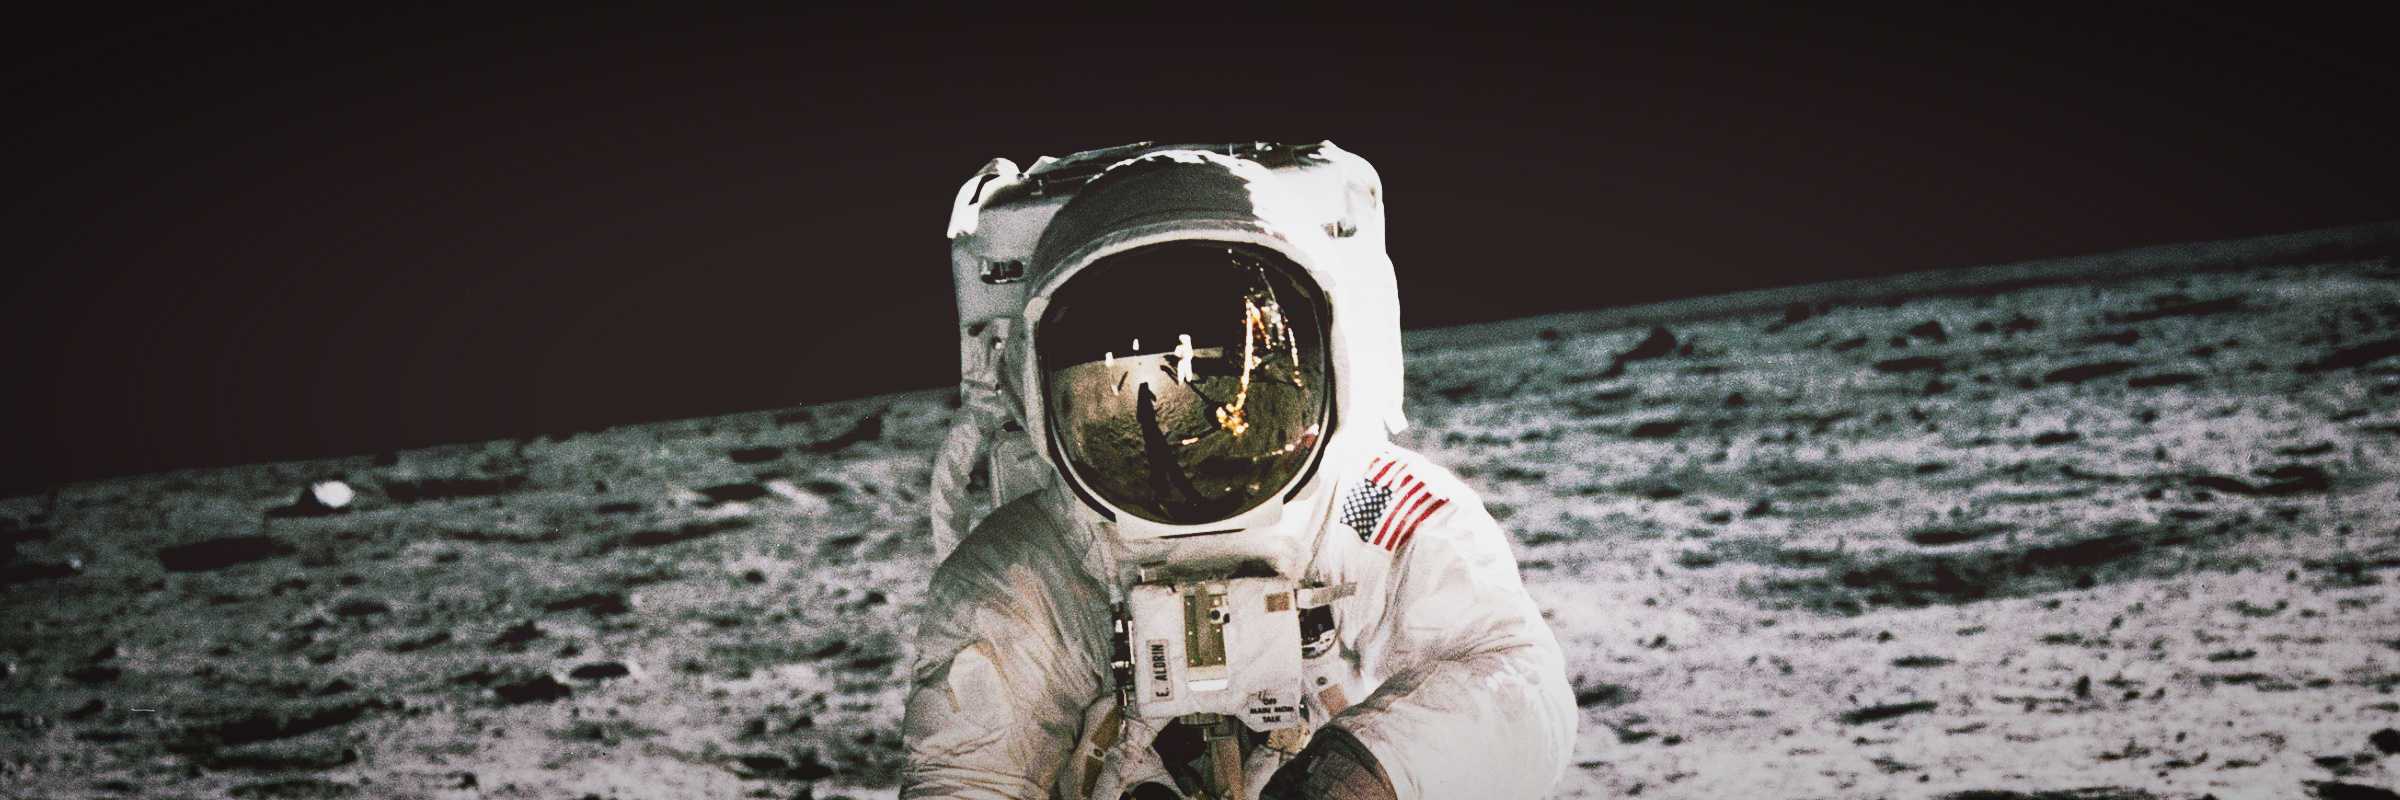 Buzz Aldrin, astronauta dell'Apollo 11, cammina sulla superficie della luna. Foto scattata il 20 luglio 1969 da Neil Armstrong.